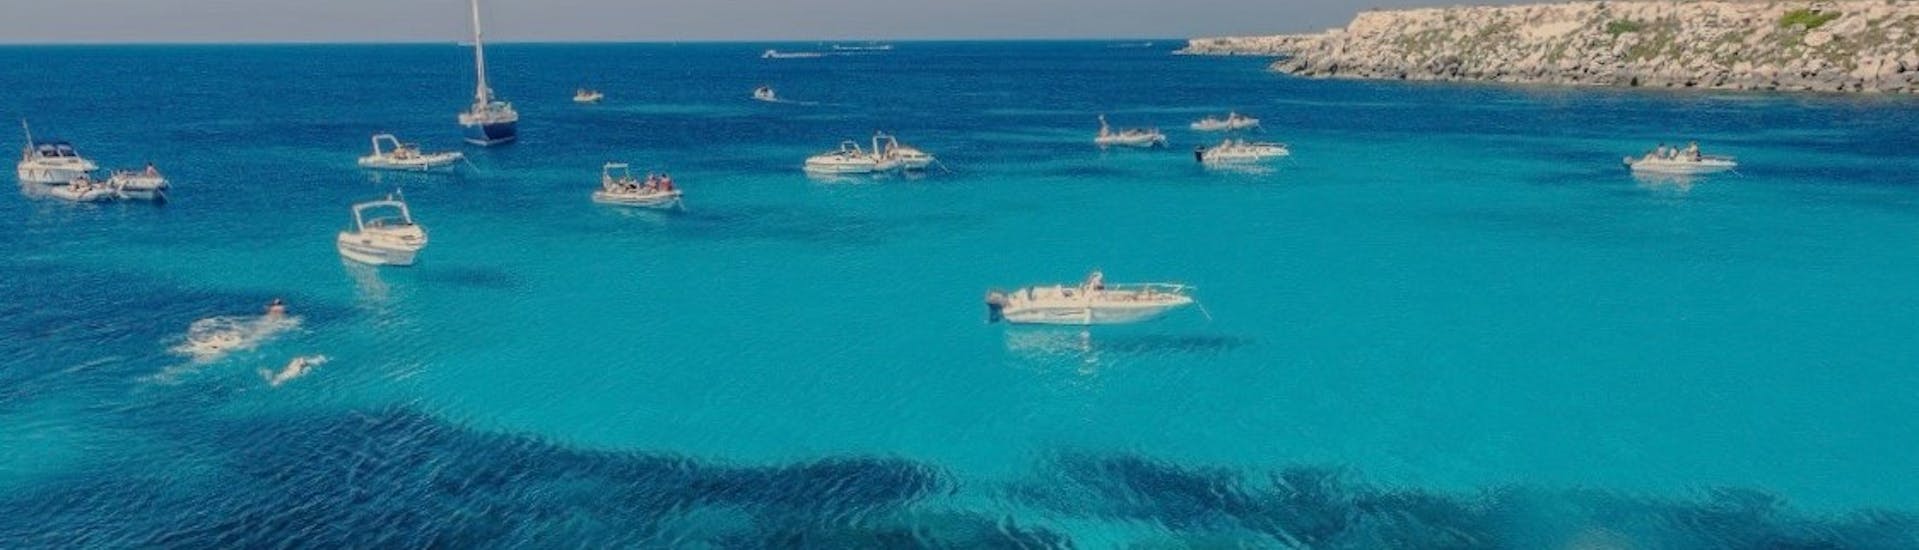 Bootsverleih - Ägadische Inseln, Riserva naturale dello Zingaro & Castellammare del Golfo.